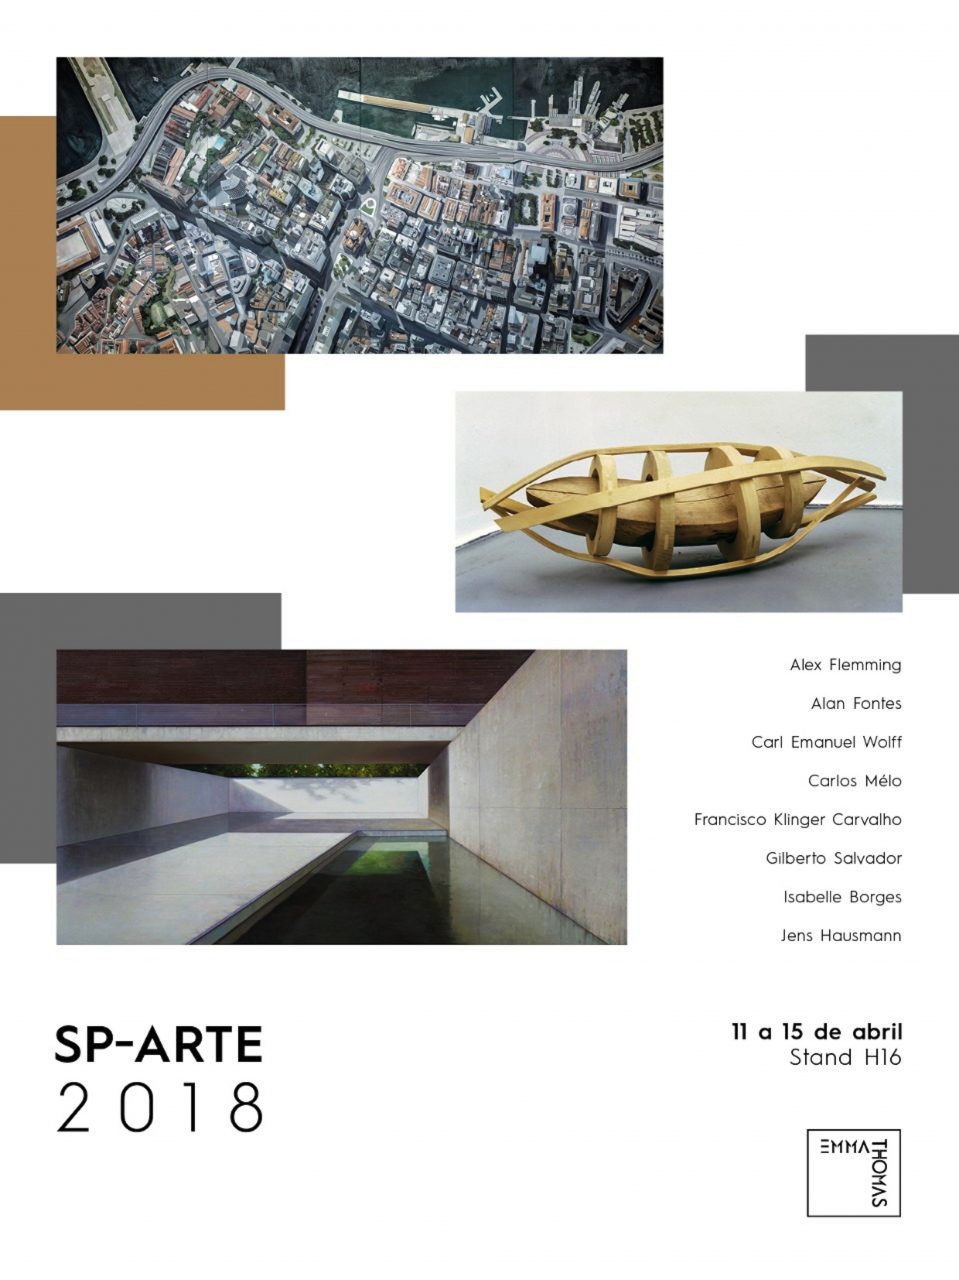 SP-ARTE international art fair